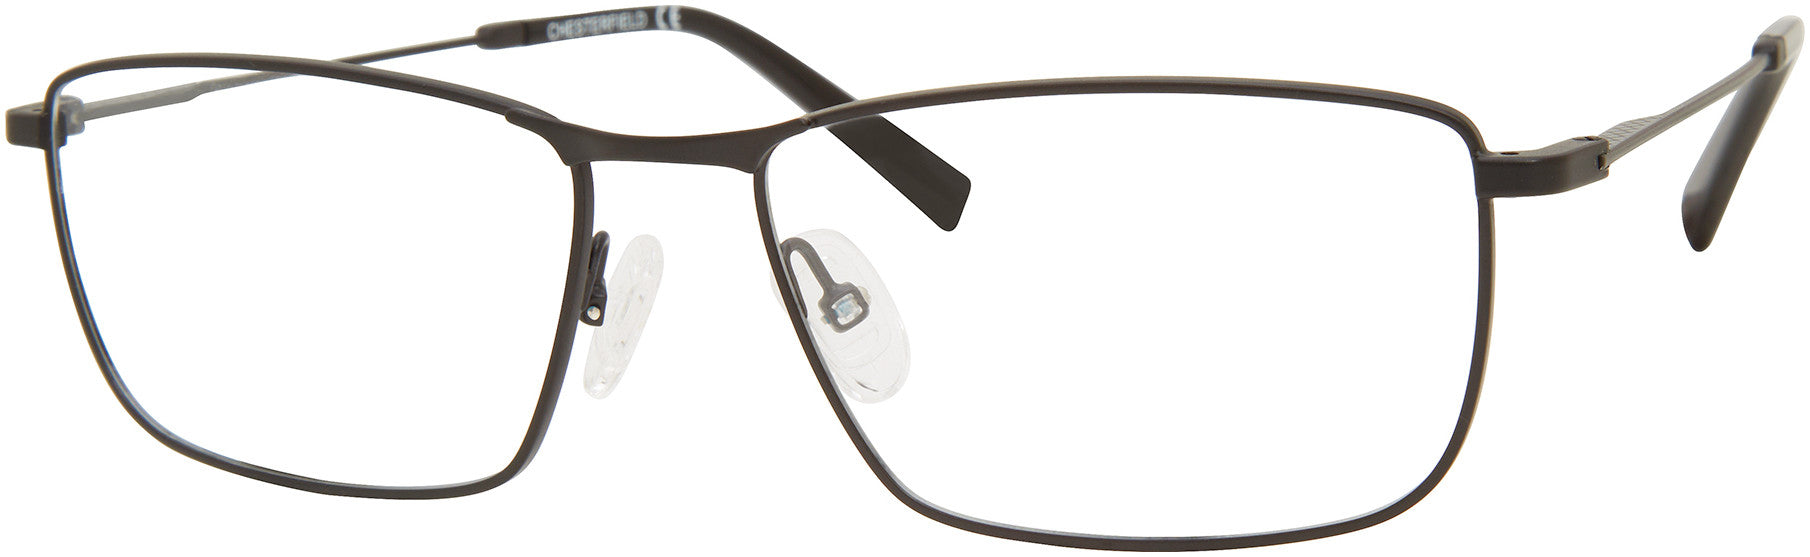  Chesterfield 80XL Rectangular Eyeglasses 0003-0003  Matte Black (00 Demo Lens)